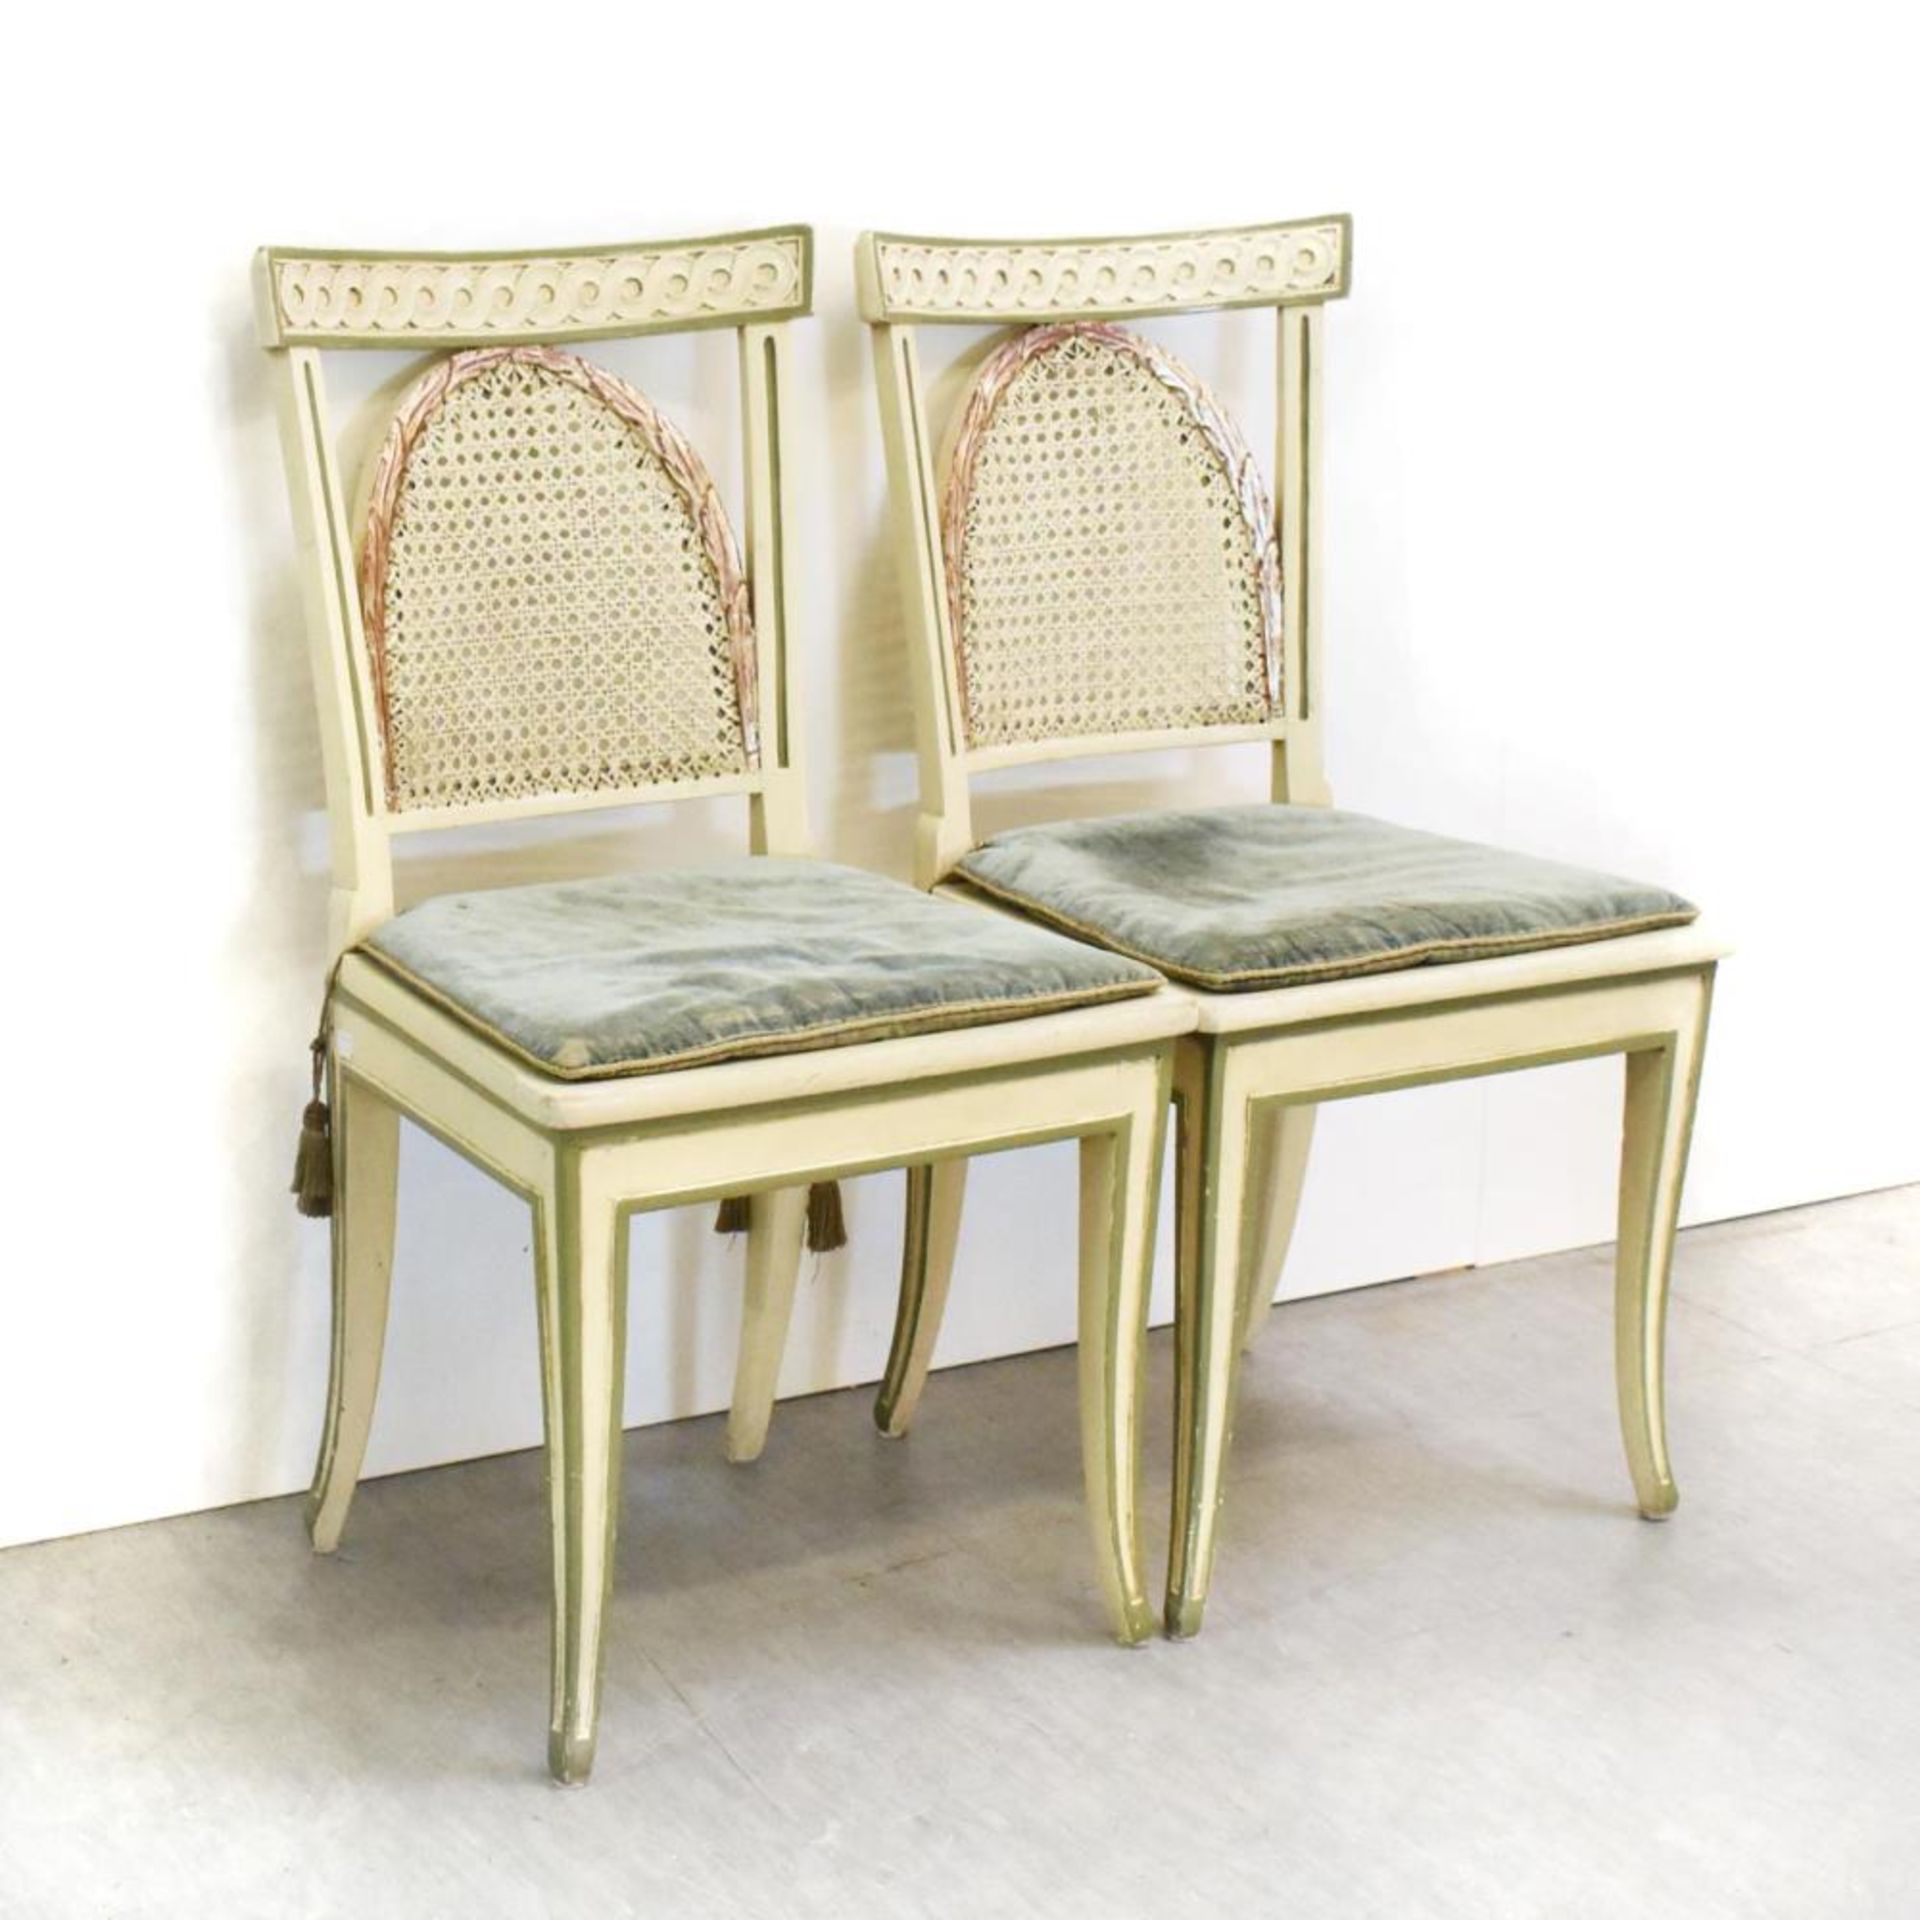 Tisch mit acht Stühlen. Holz, Farbfassung, Rohrgeflecht. - Bild 3 aus 4